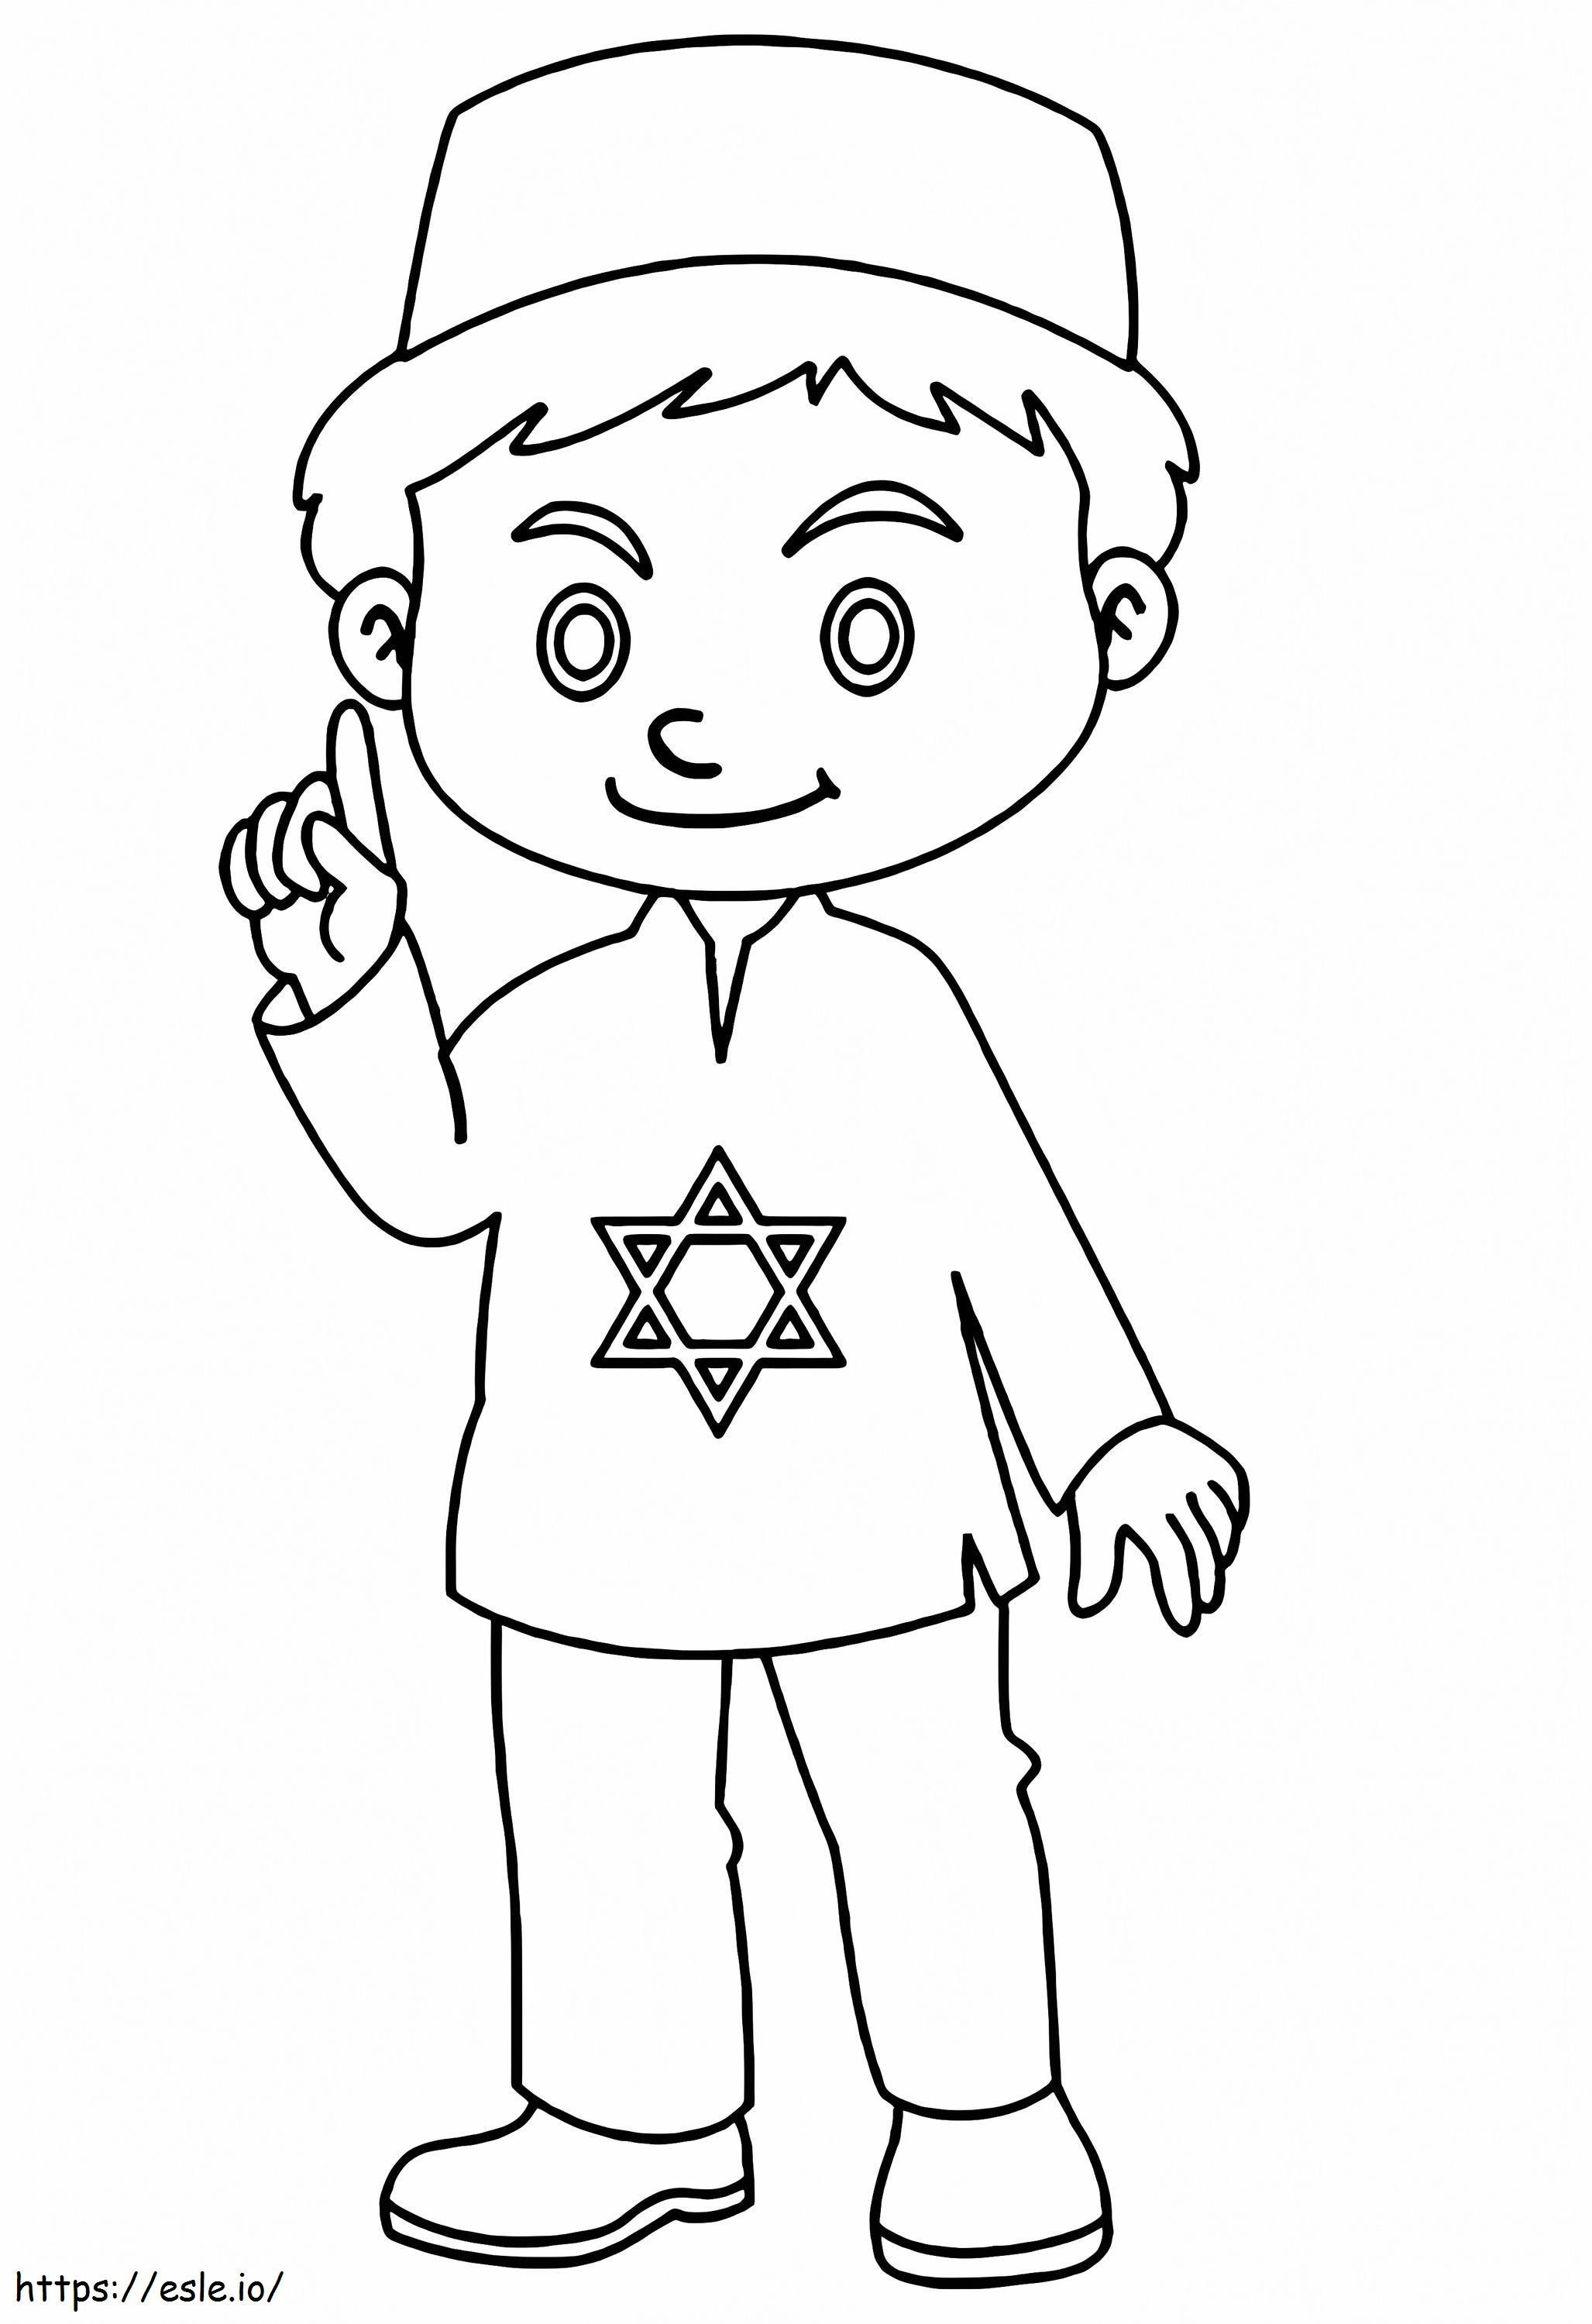 Izraelski chłopiec kolorowanka